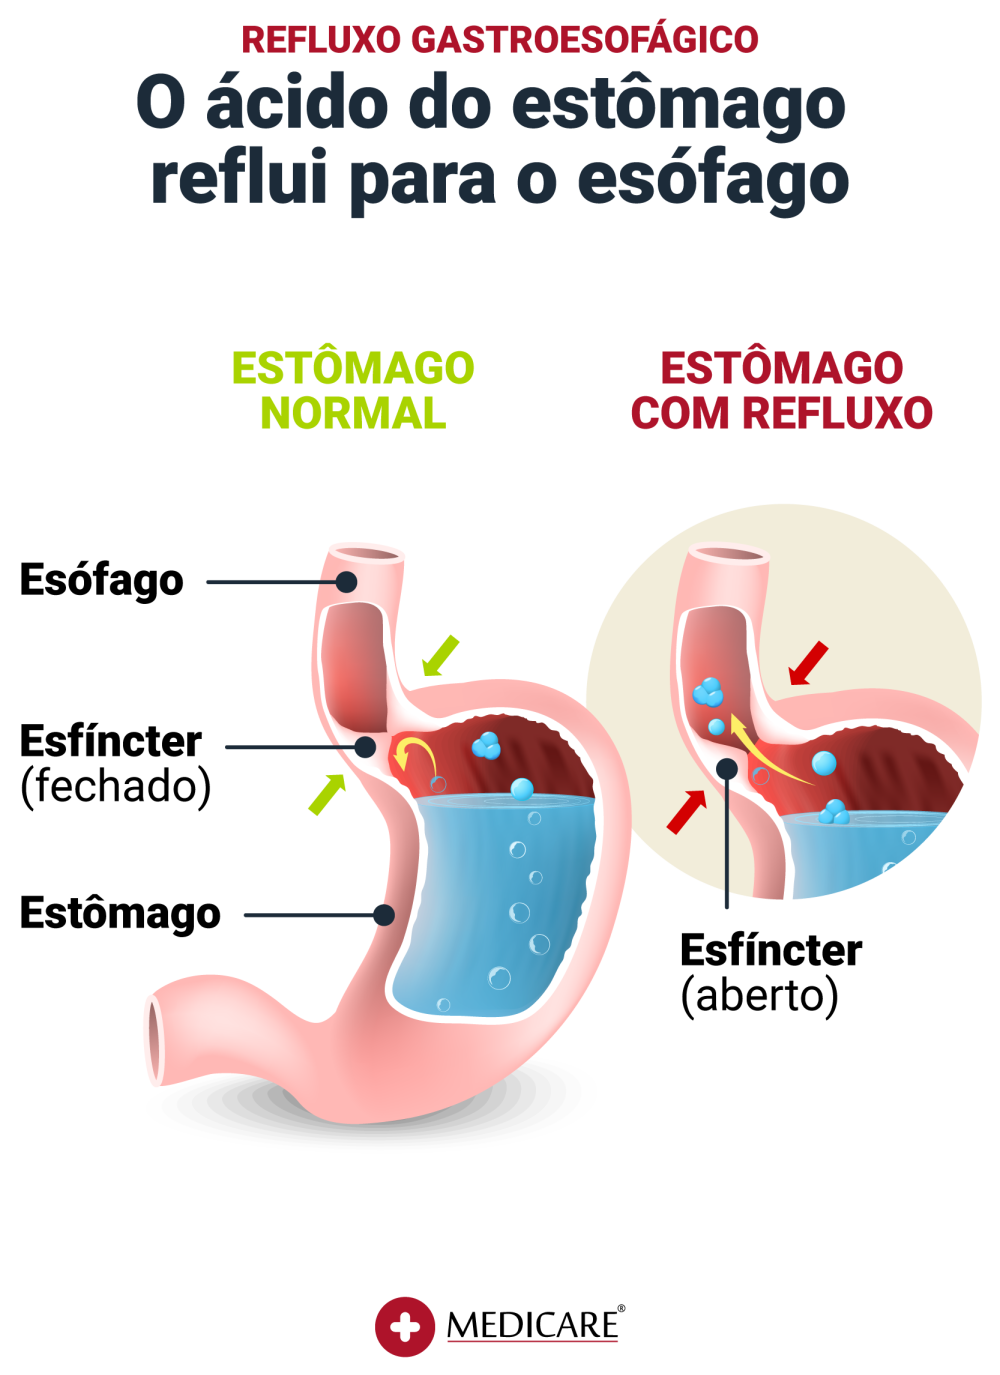 Imagem ilustrativa das diferenças entre o estado de um estomâgo normal e estomâgo com refluxo